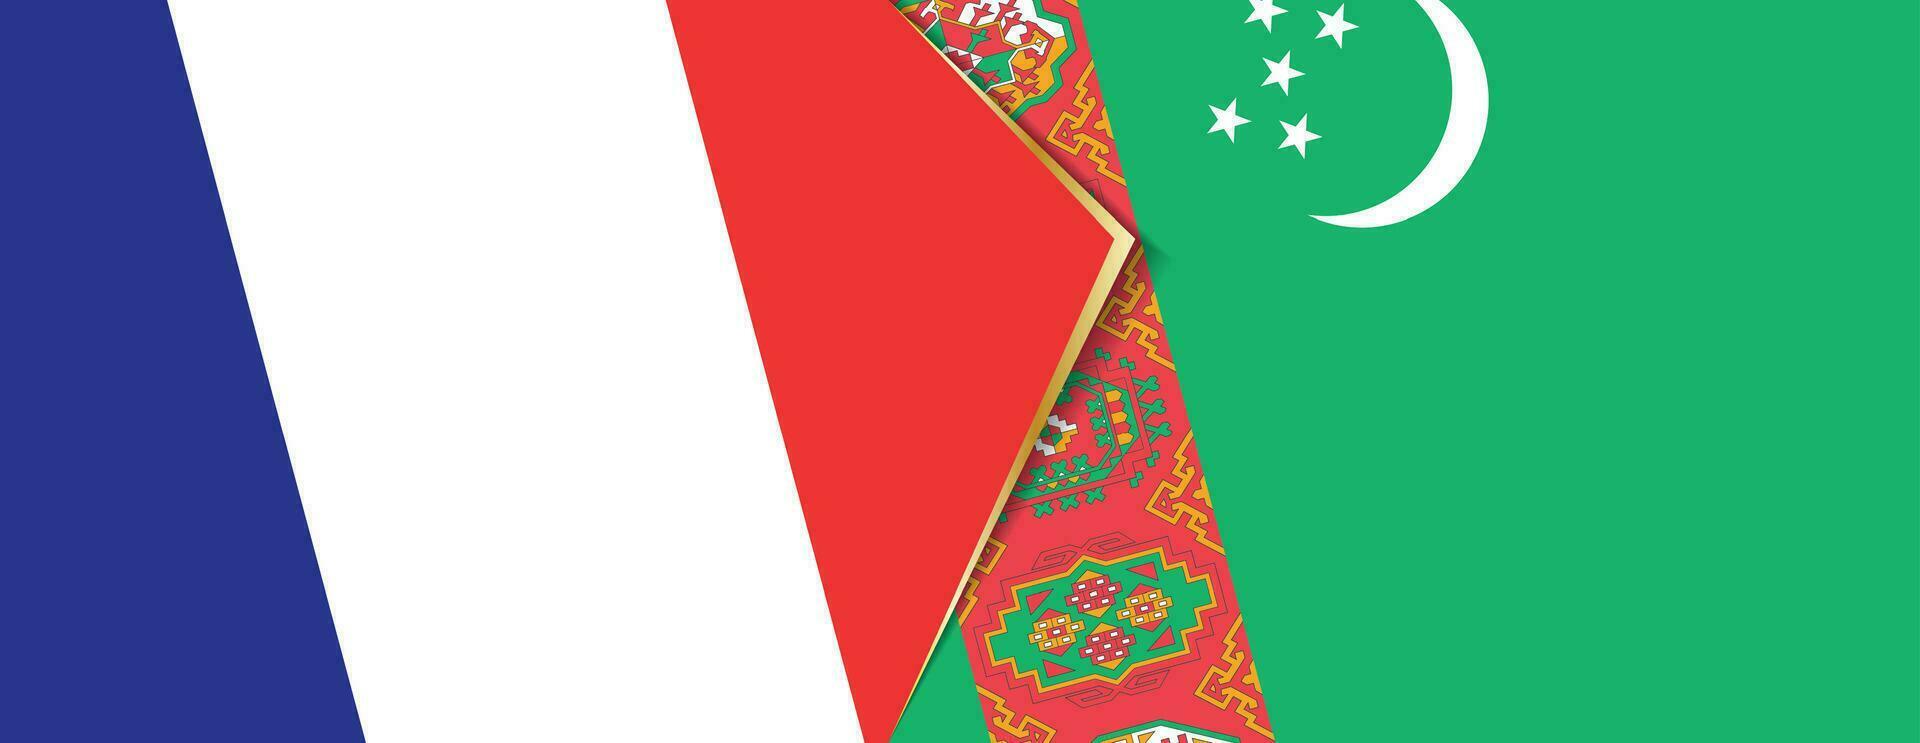 Frankrijk en turkmenistan vlaggen, twee vector vlaggen.